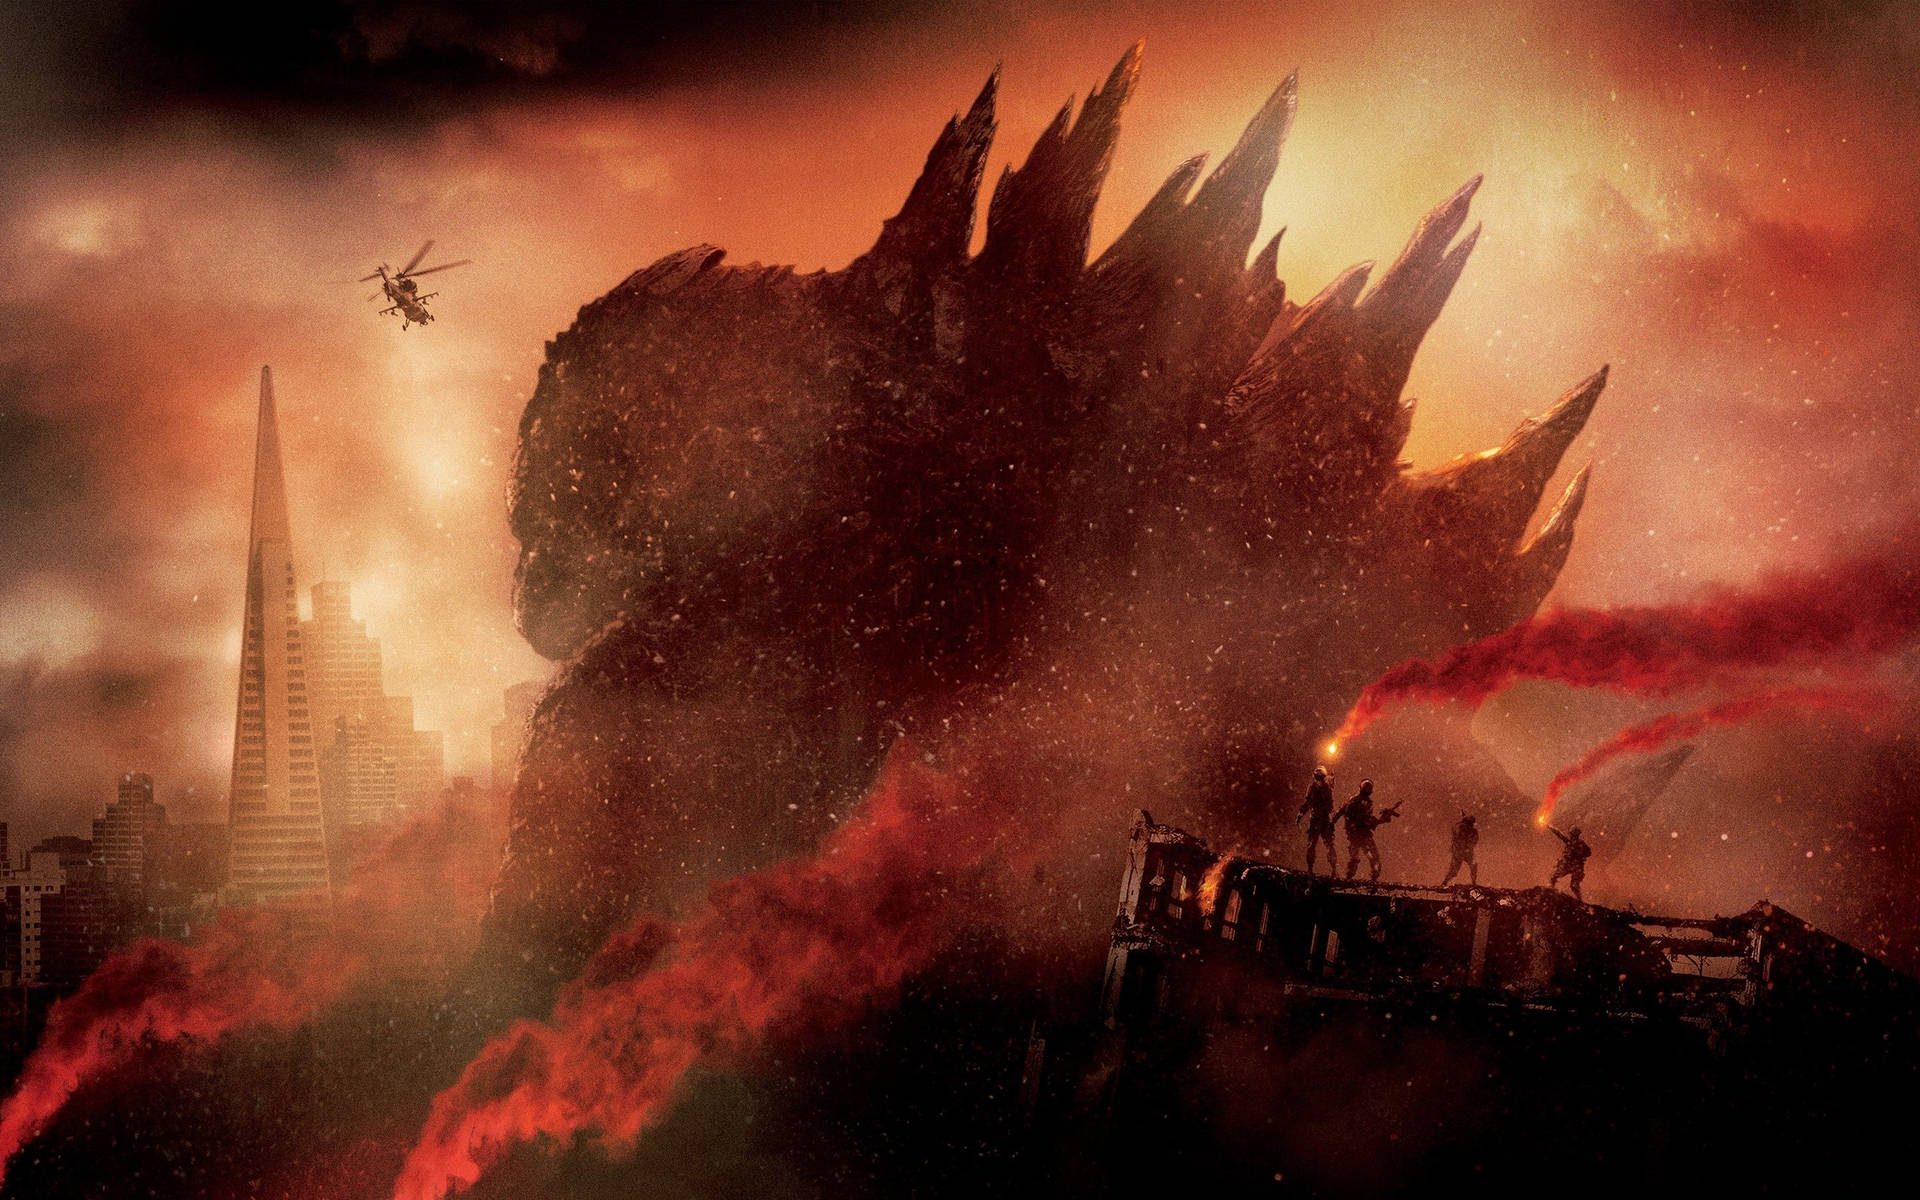 Godzilla 2880X1800 Wallpaper and Background Image